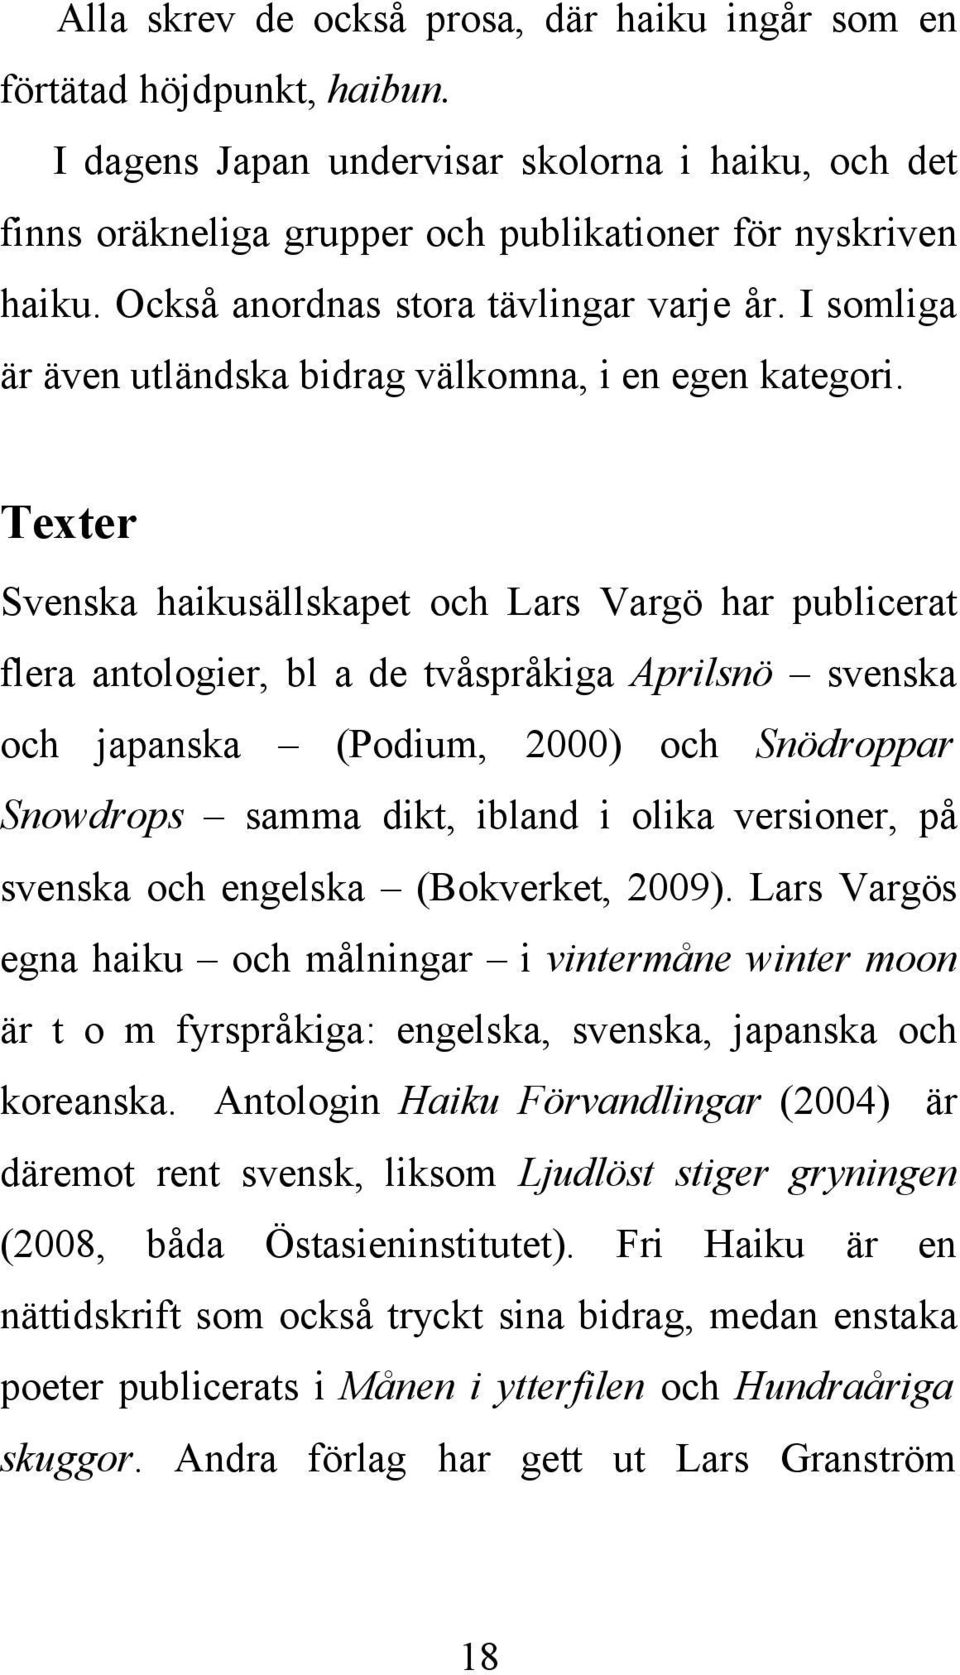 Texter Svenska haikusällskapet och Lars Vargö har publicerat flera antologier, bl a de tvåspråkiga Aprilsnö svenska och japanska (Podium, 2000) och Snödroppar Snowdrops samma dikt, ibland i olika